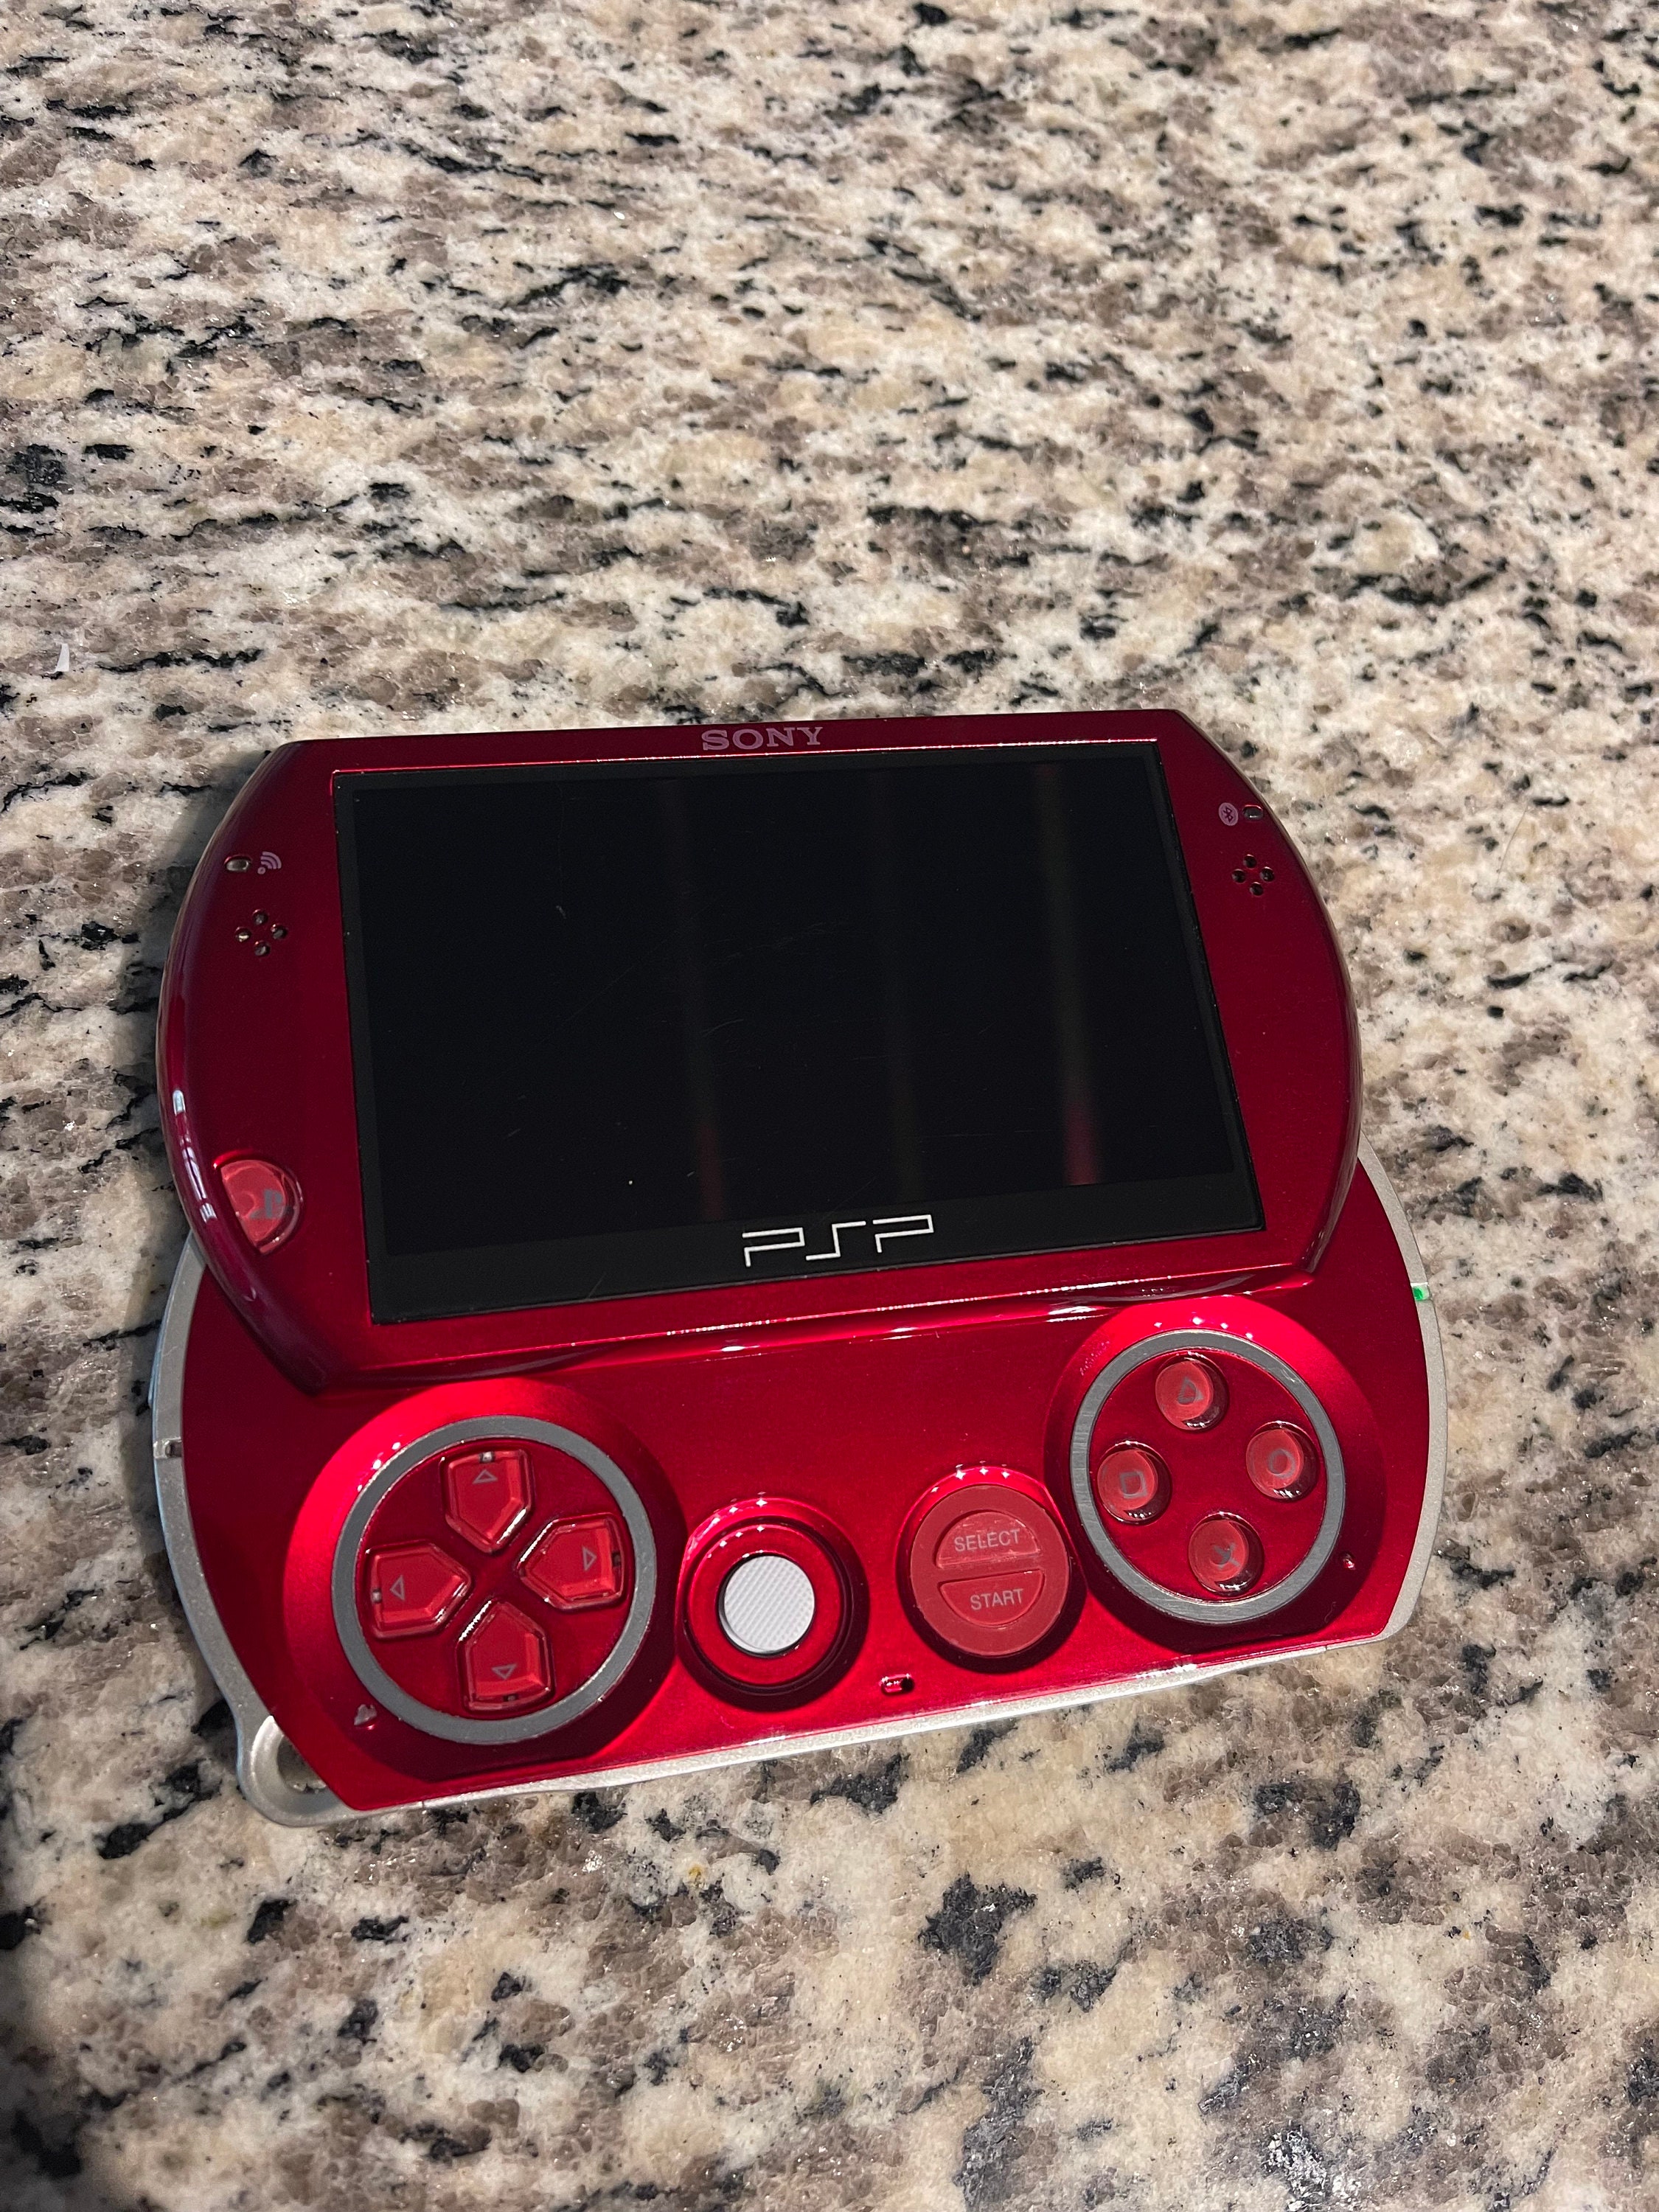 GameBoy Advance Emulator For PSP/PSP GO! 